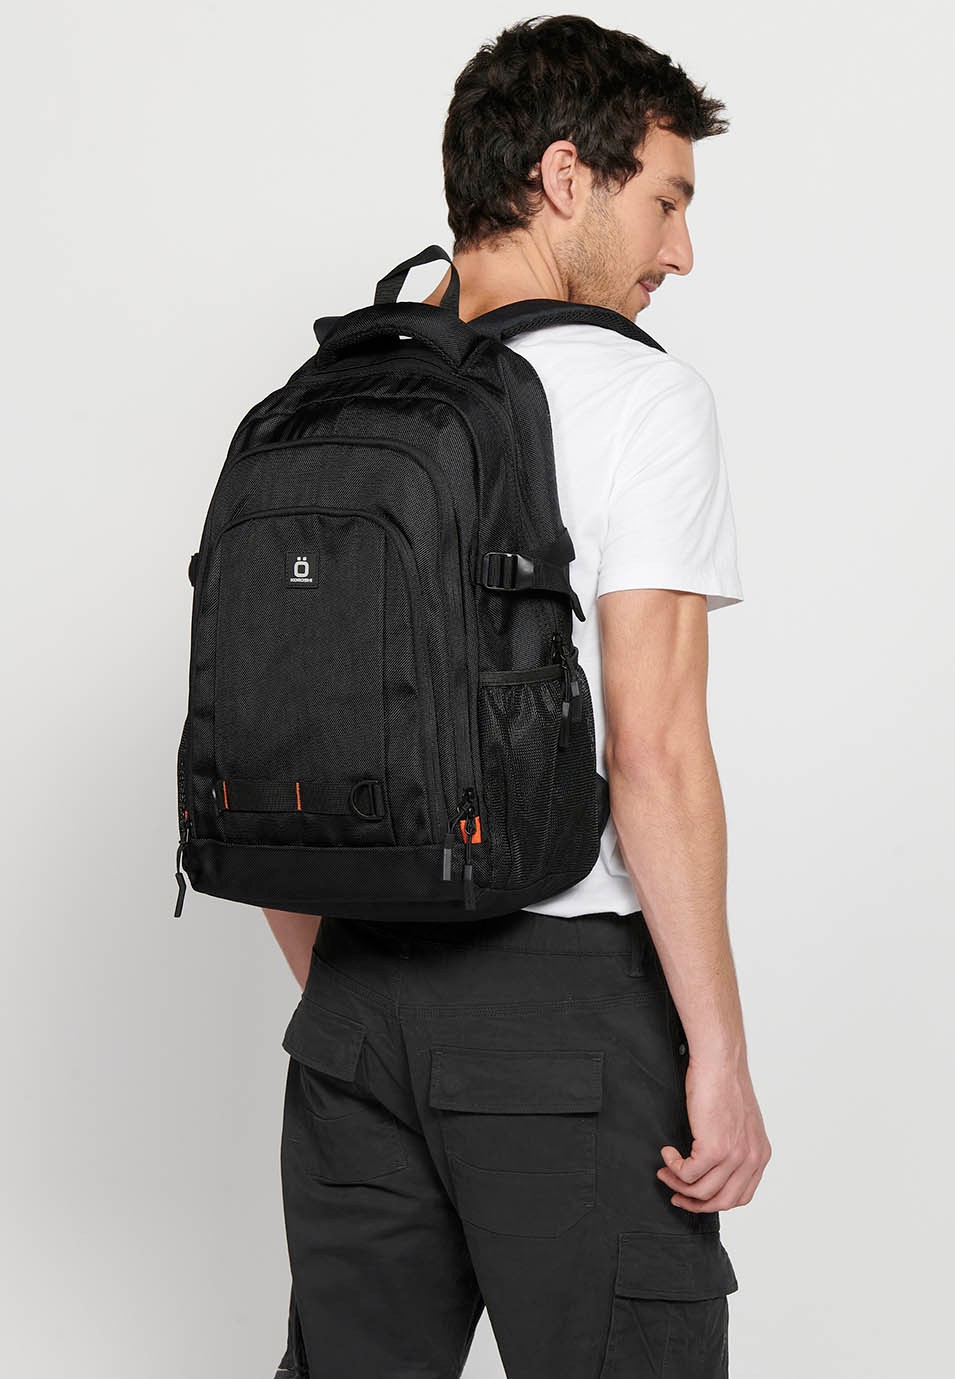 Koröshi-Rucksack mit drei Reißverschlussfächern, eines für einen Laptop, und schwarzen Innentaschen 8